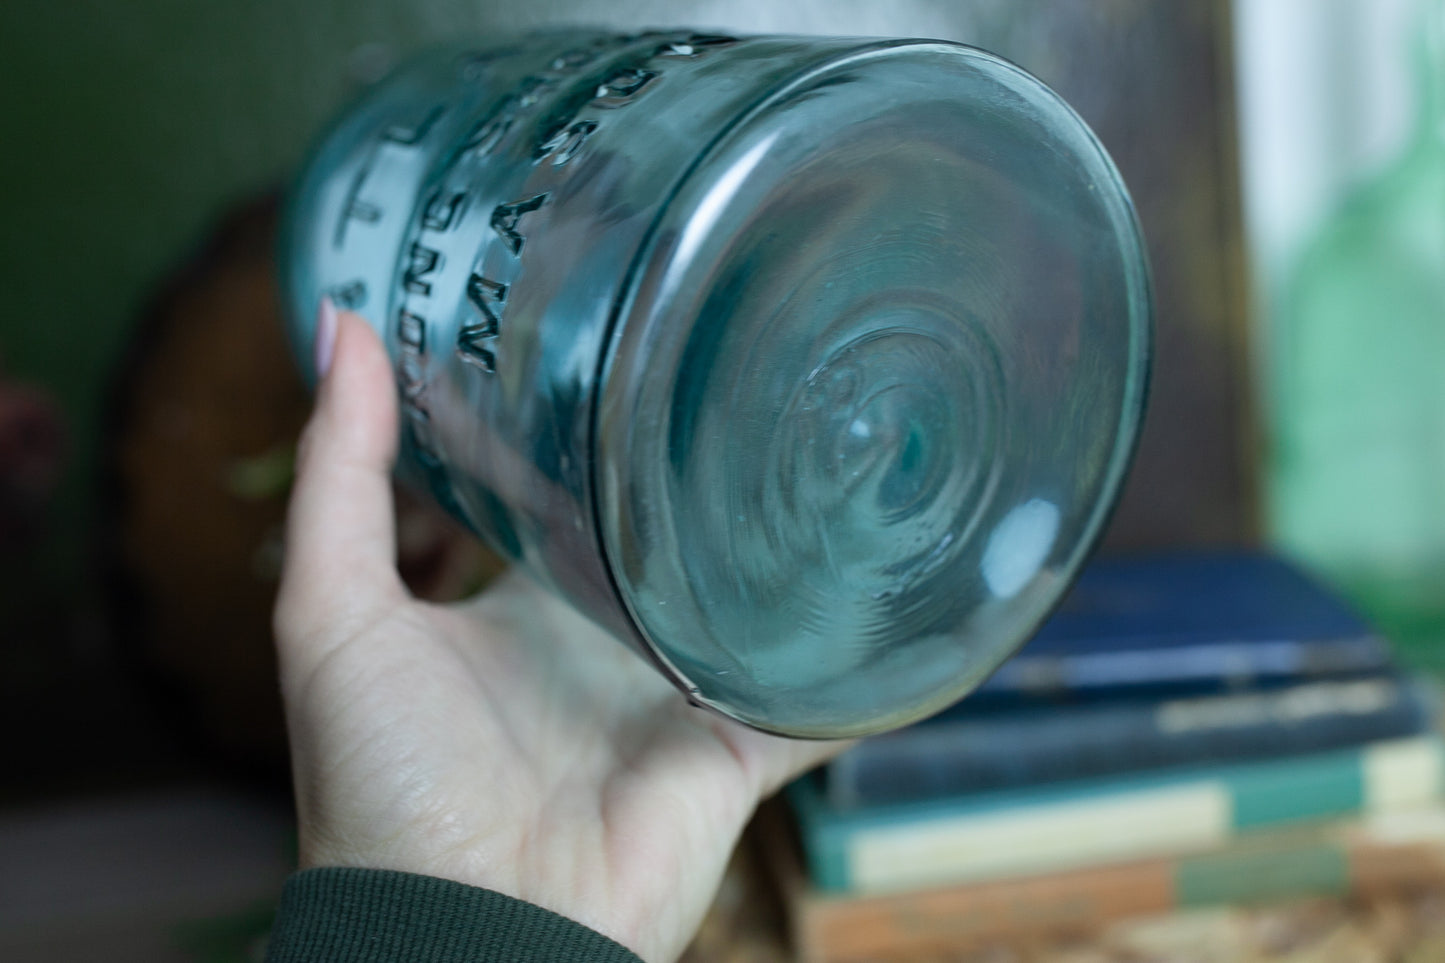 Vintage Glass Jar- Atlas Jar - Strong Shoulder Mason Jar - Vintage Mason Jar